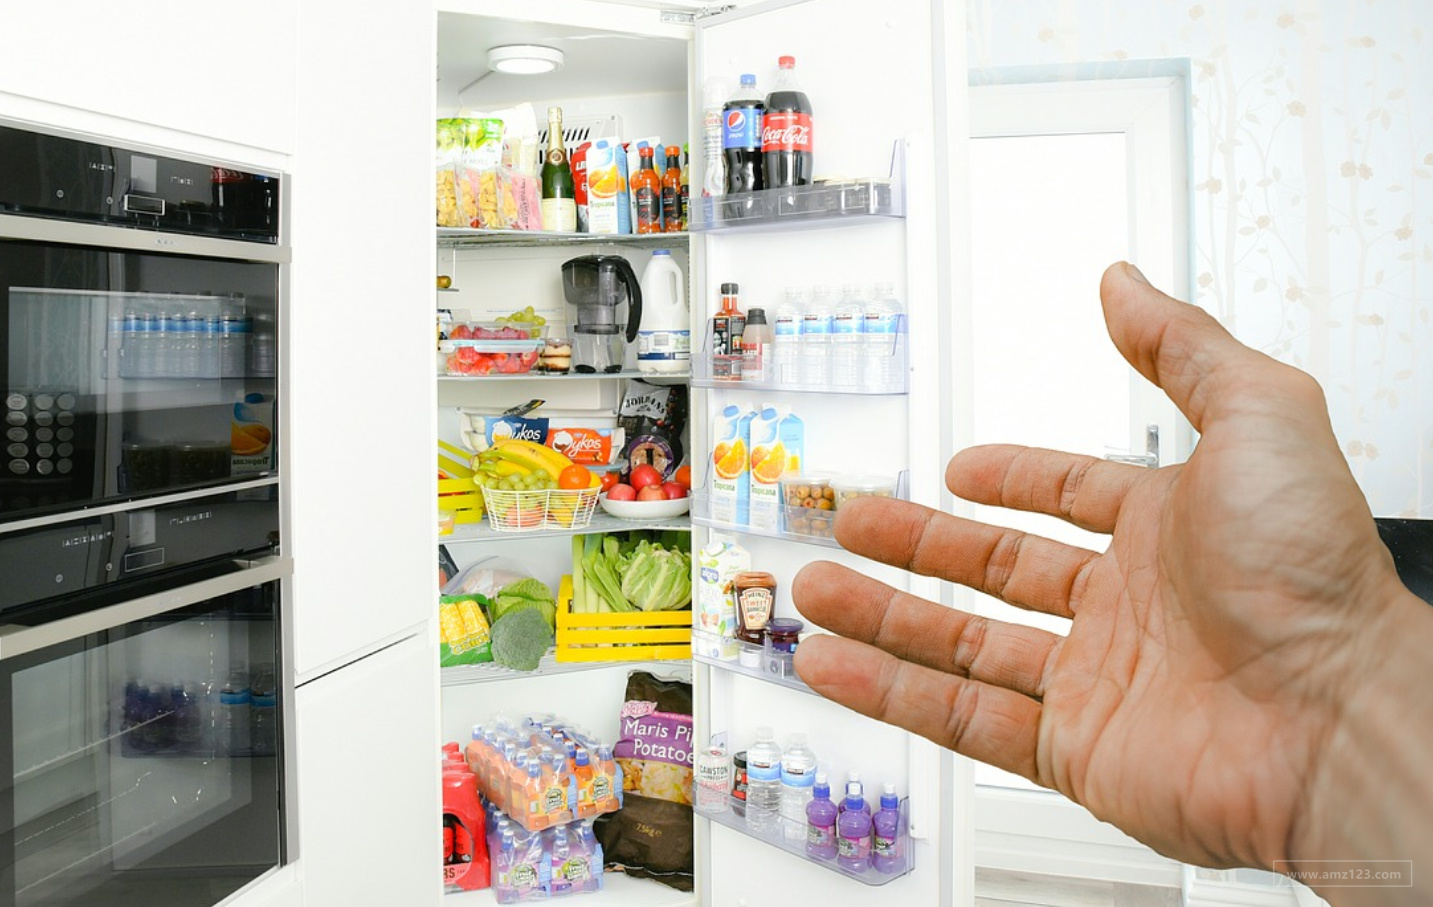 亚马逊正在开发“智能”冰箱！进军家电领域！扩大杂货版图！